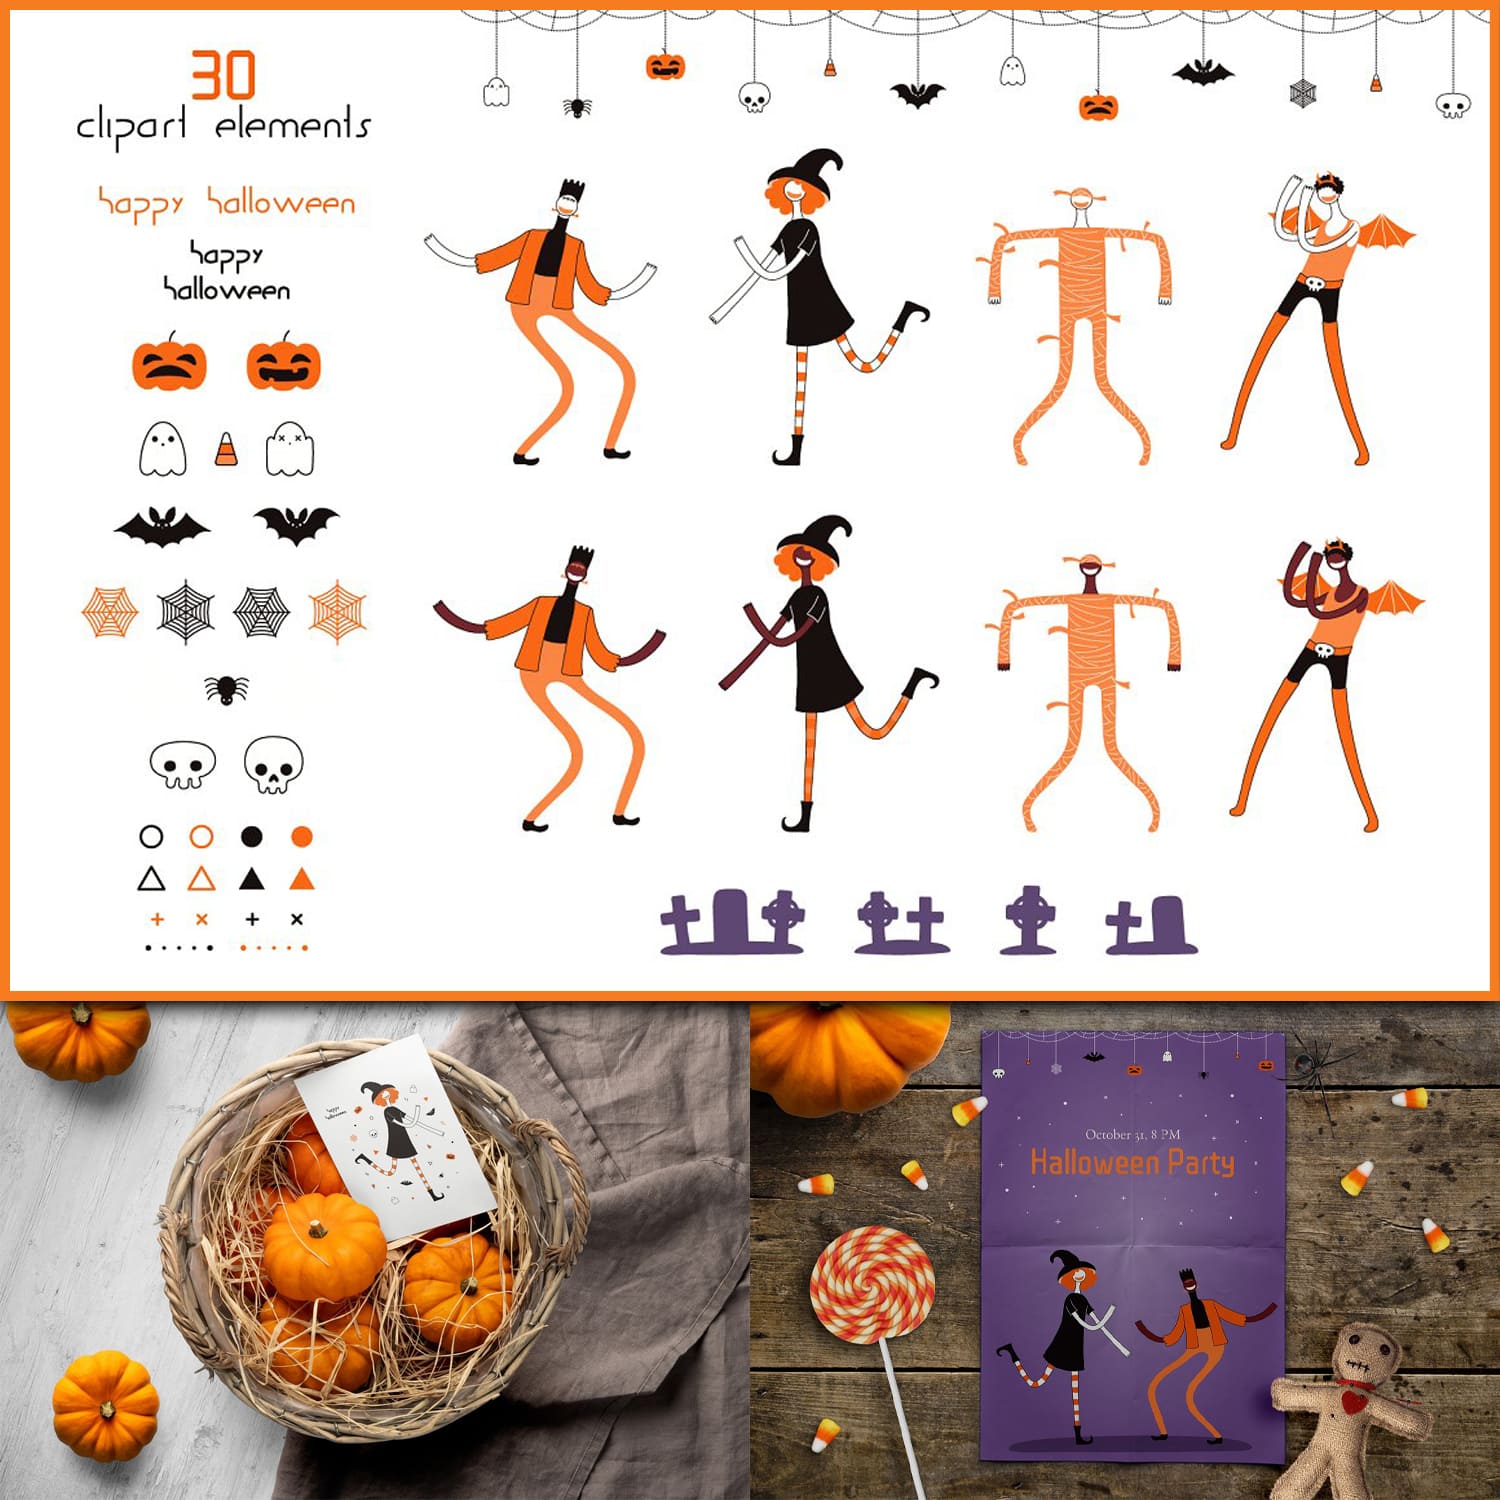 Halloween Dance Vector Graphics cover.